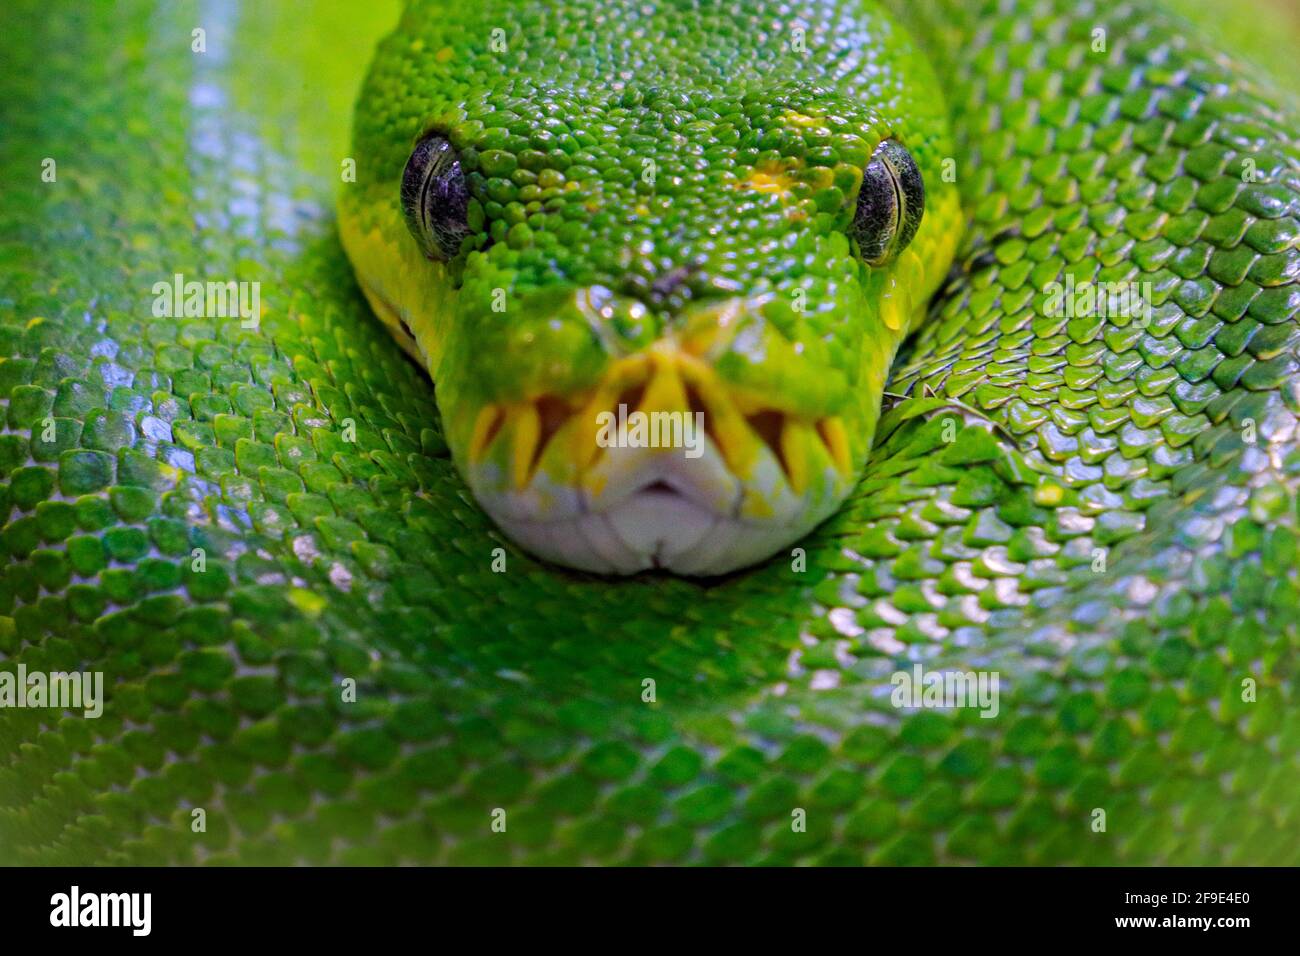 Albero verde pitone, Morelia viridis, serpente dall'Indonesia, Nuova Guinea. Dettaglio ritratto della testa del serpente, nella foresta. Rettile nell'habitat forestale. Wil Foto Stock